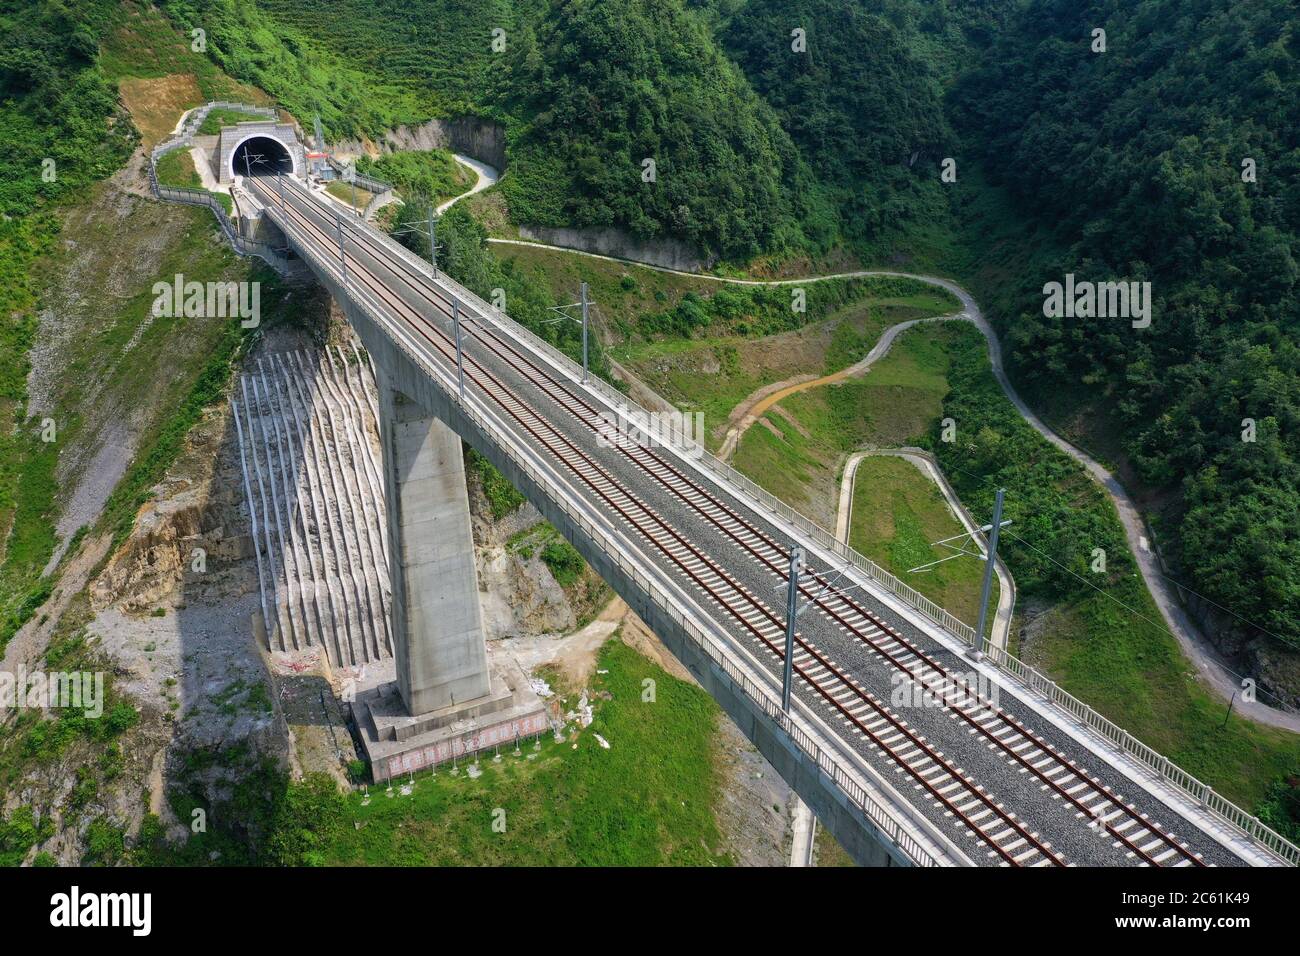 Liupanshui. Juli 2020. Luftaufnahme vom 6. Juli 2020 zeigt eine Eisenbahnbrücke entlang der Anshun-Liupanshui-Eisenbahn in der südwestlichen chinesischen Provinz Guizhou. Die Intercity-Bahn Anshun-Liupanshui mit einer Geschwindigkeit von 250 km/h wird zur Eröffnung vorbereitet. Die Eisenbahn wird die Fahrzeit zwischen Guiyang und Liupanshui von den aktuellen 3.5 Stunden auf etwa 1 Stunde verkürzen, und Liupanshui City wird vollständig mit dem nationalen Hochgeschwindigkeitsbahnnetz verbunden sein. Quelle: Liu Xu/Xinhua/Alamy Live News Stockfoto